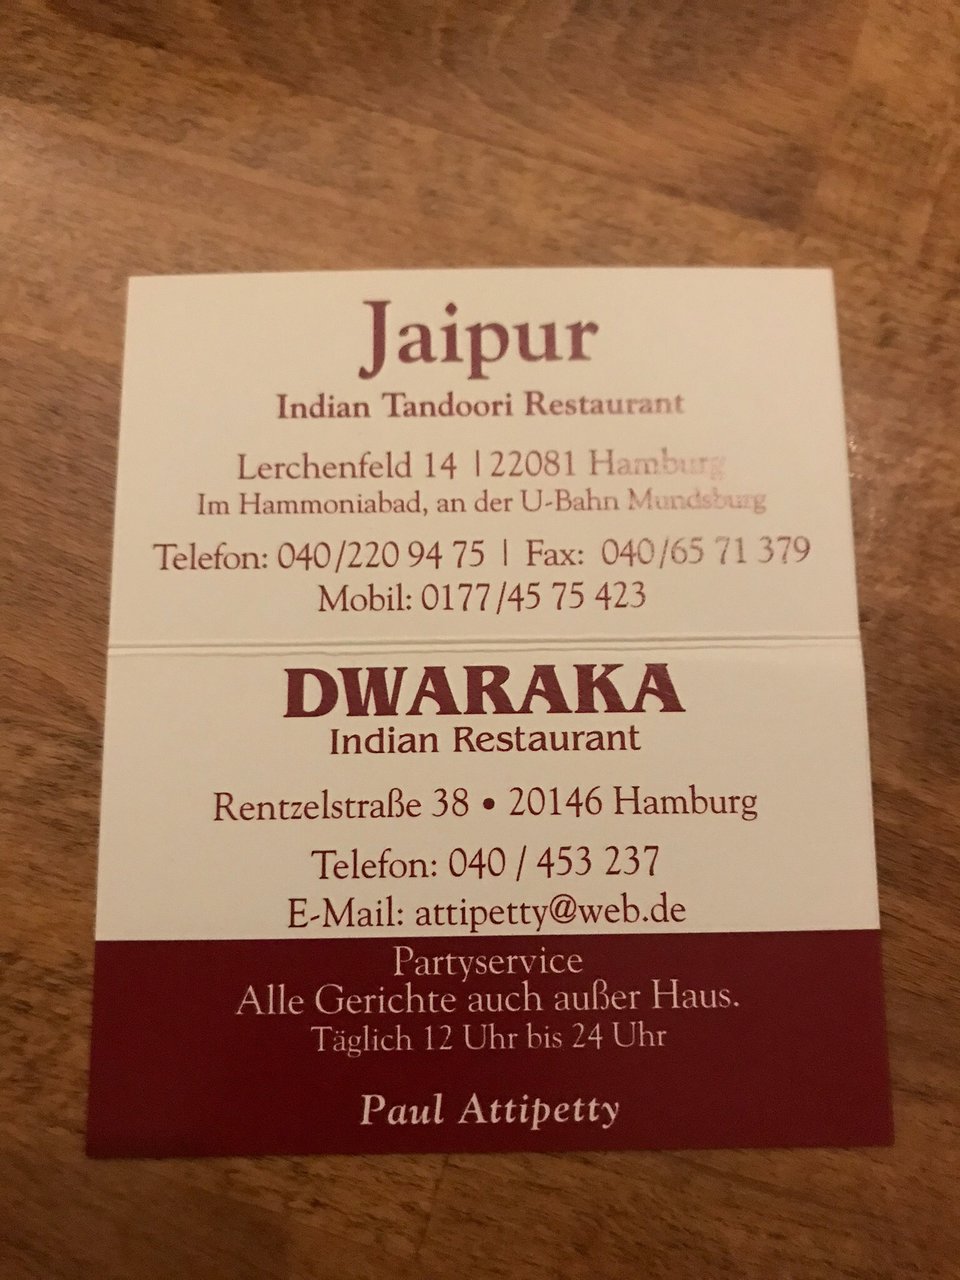 Jaipur Tandoori - Indisches Restaurant